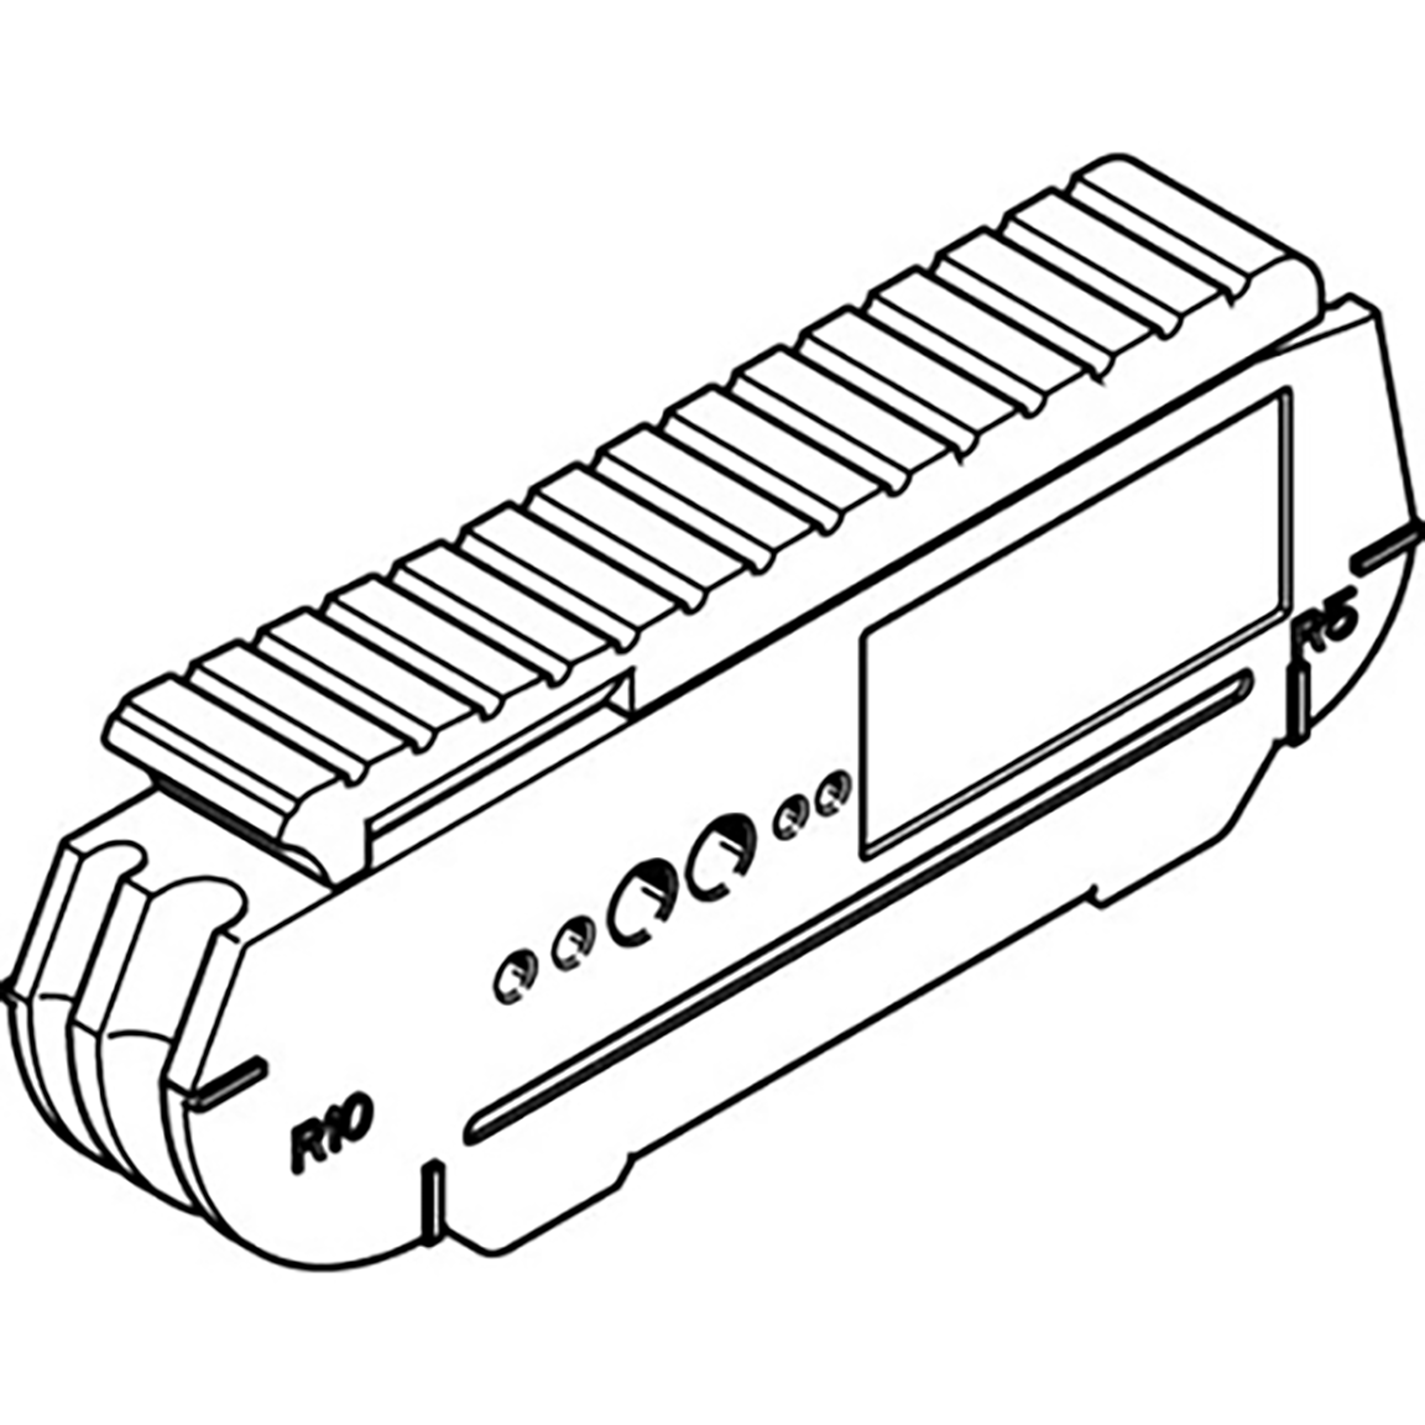 SATC-L1-C FIBRE-OPTIC CABLE CUTTER